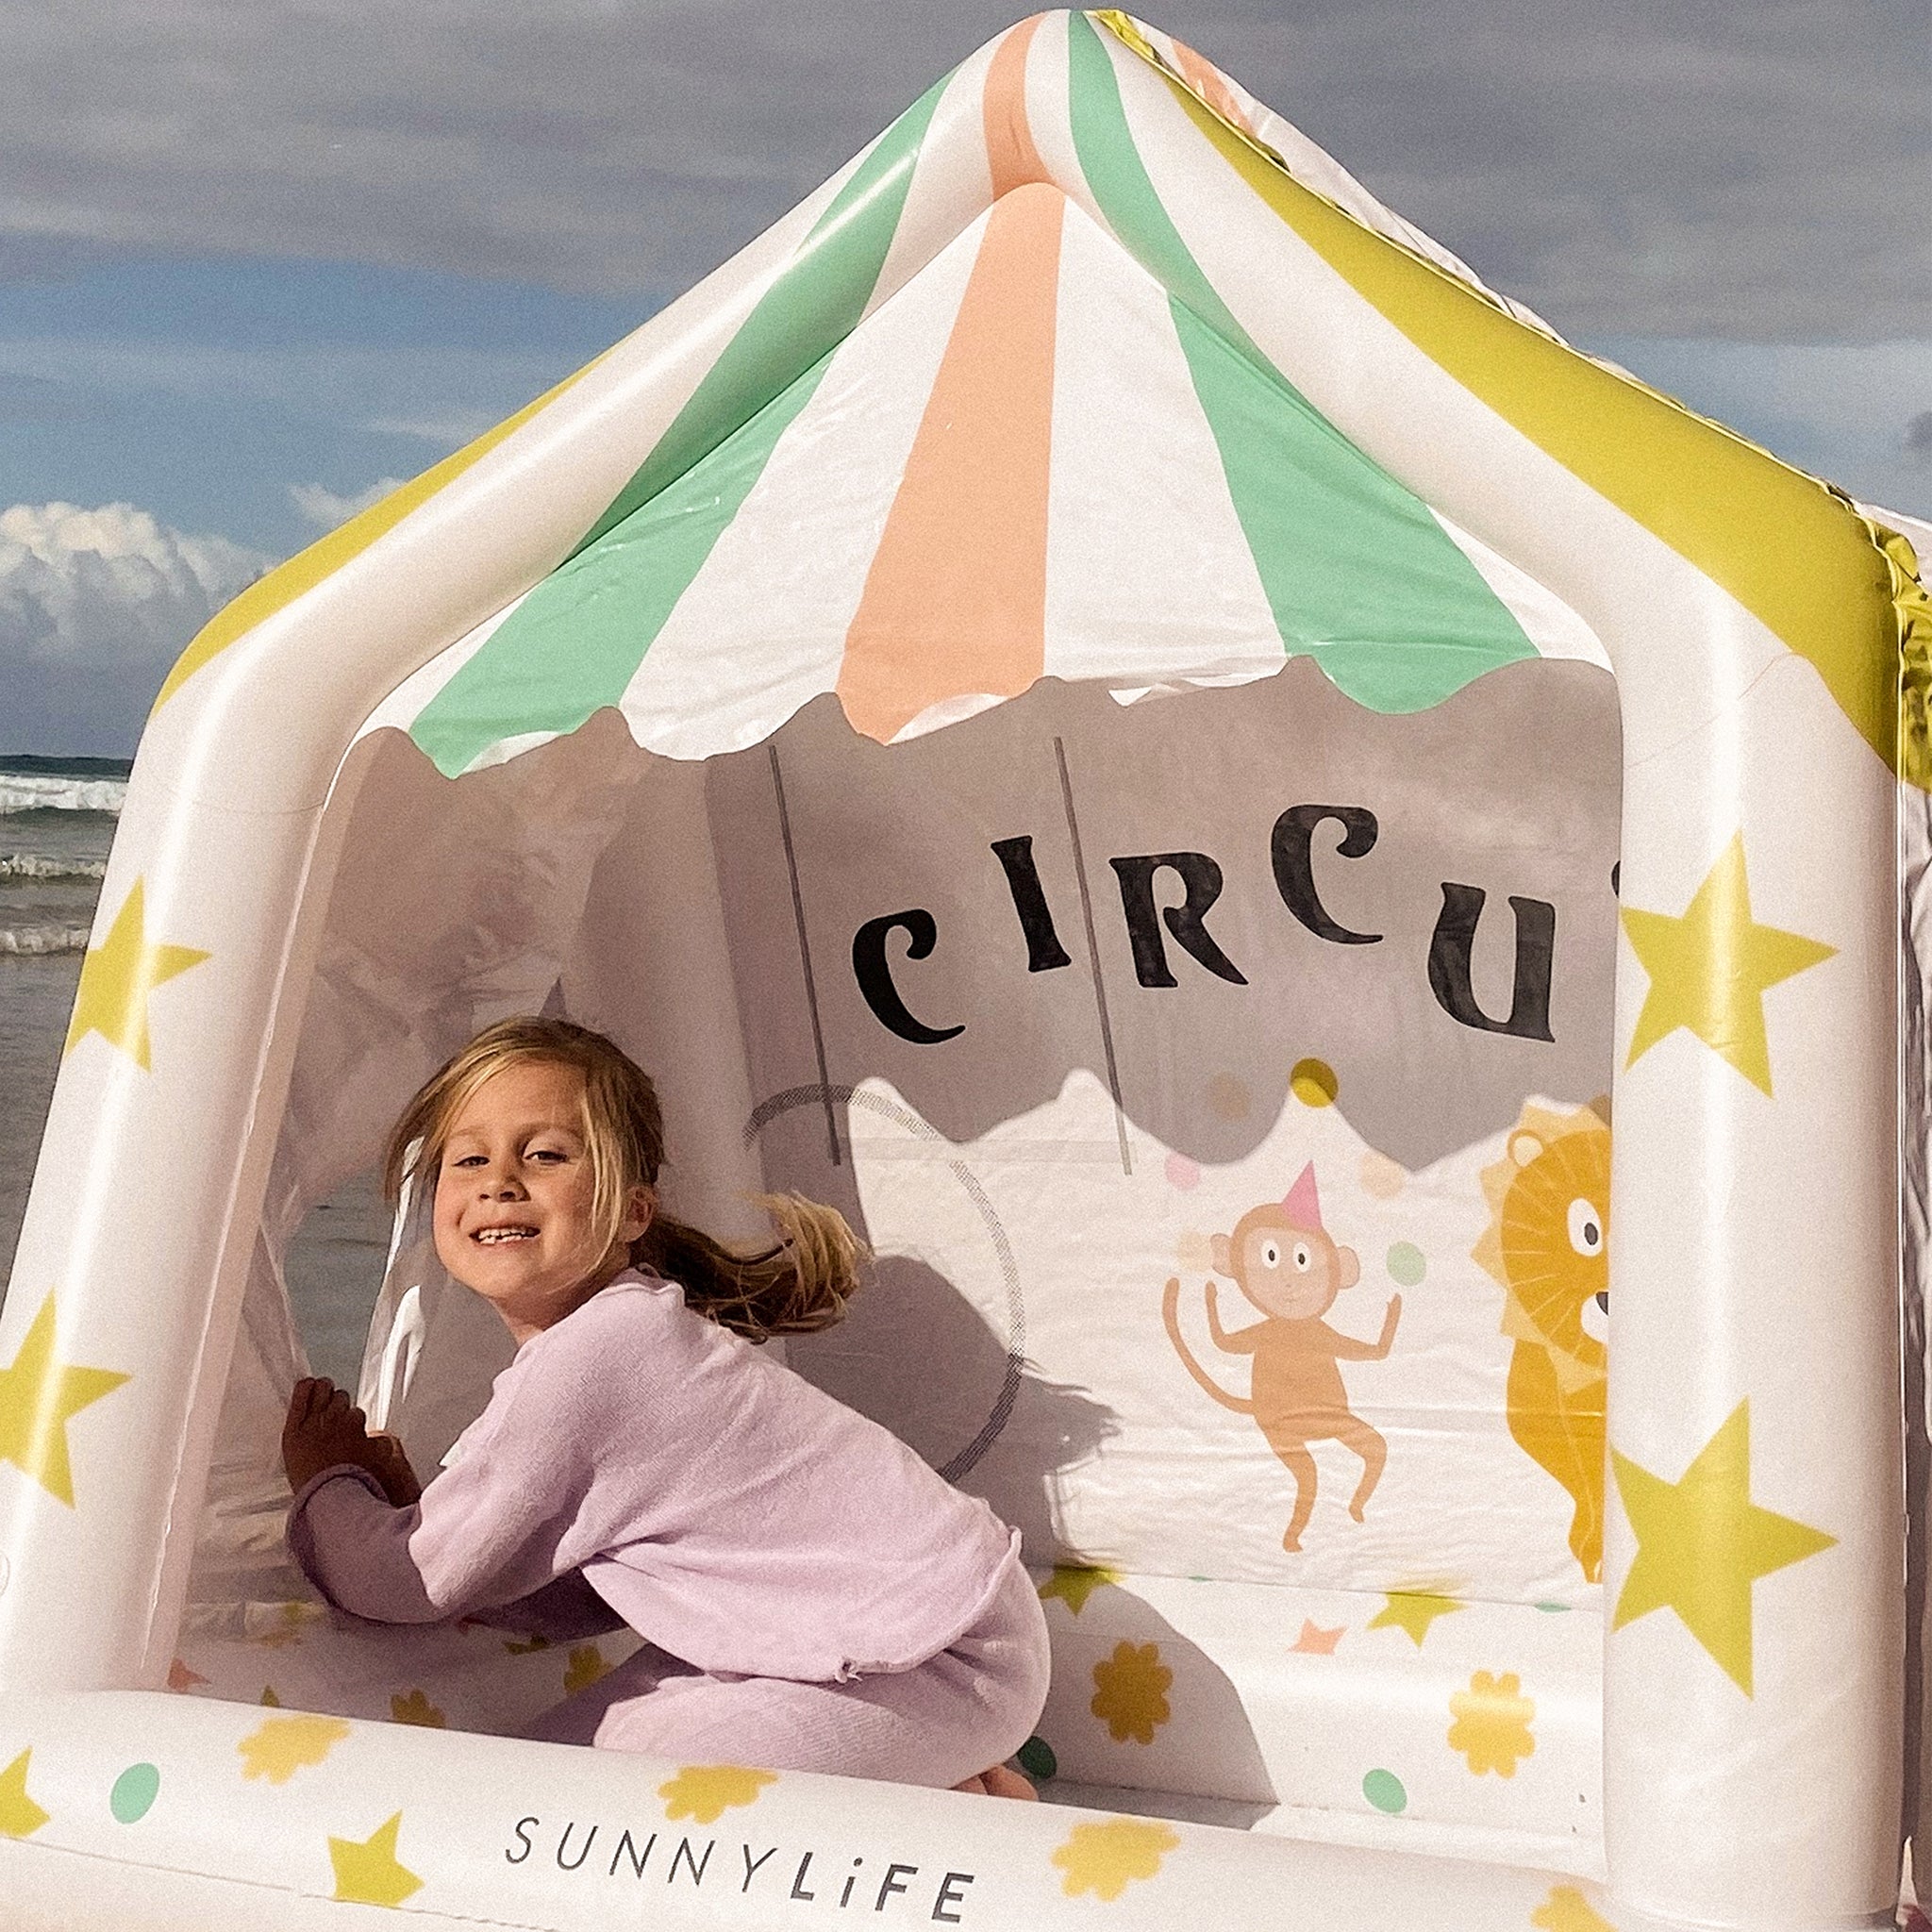 Cubby gonflable | Chapiteau de Cirque